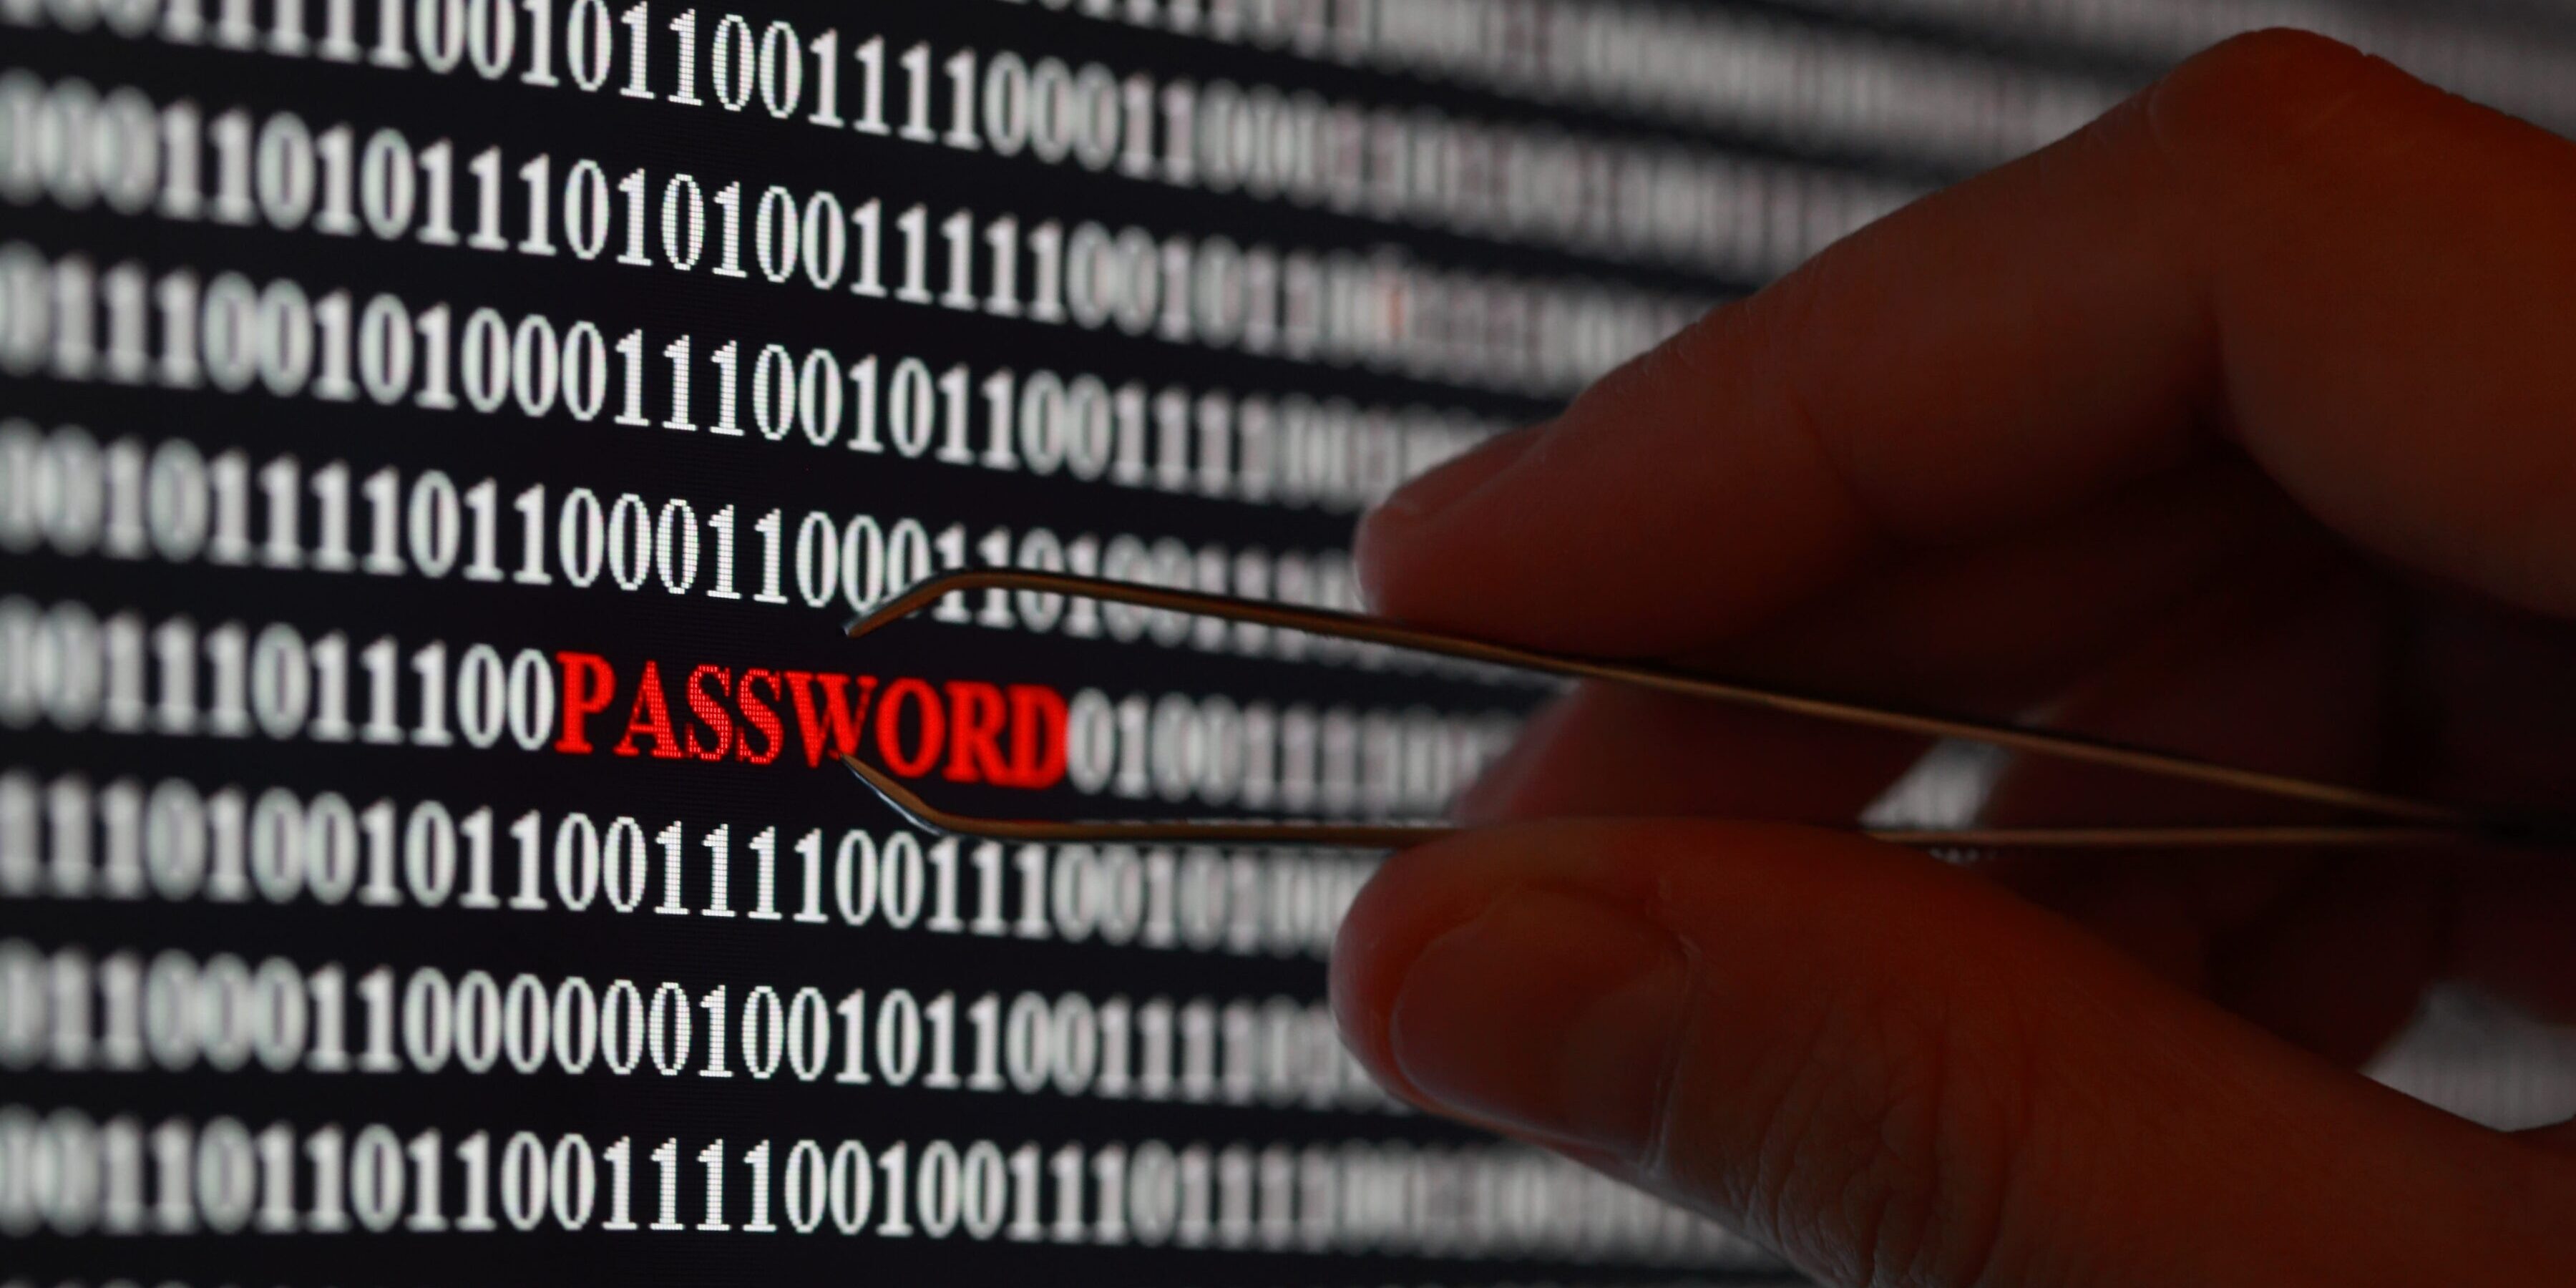 How hackers steal passwords